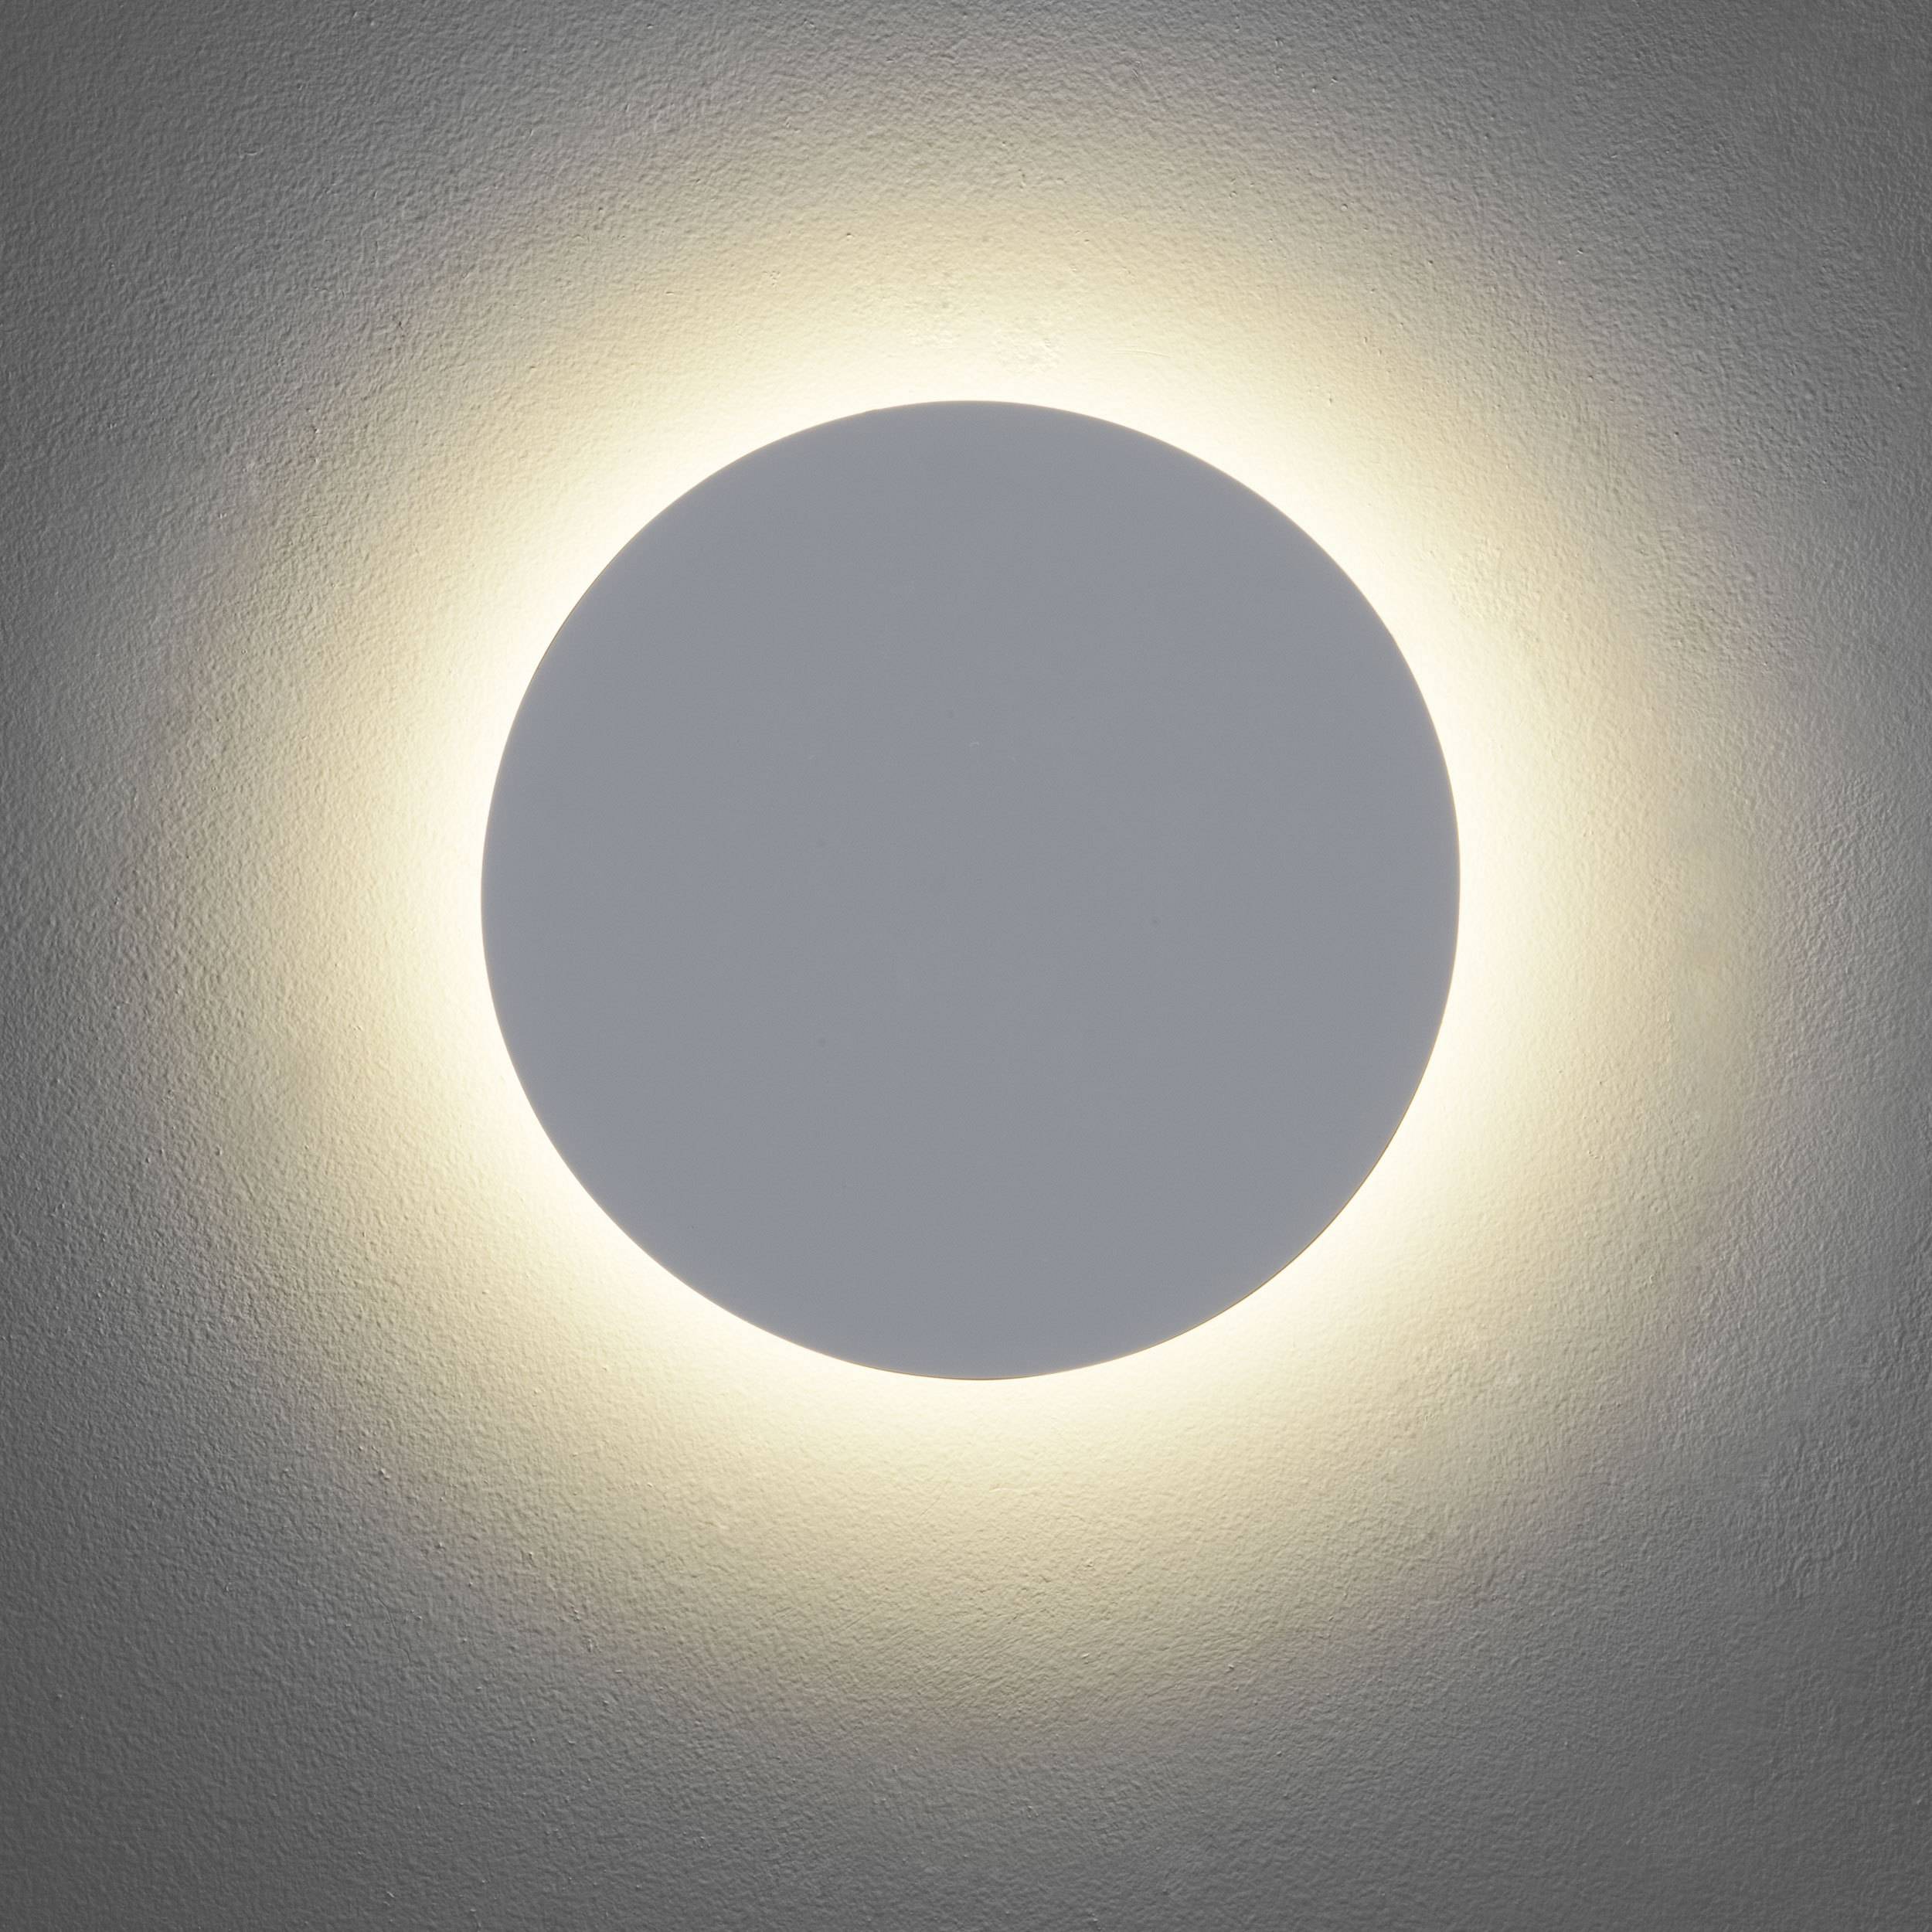 Луна светила из круглой. 1660 Techno led белый. Светильник Эклипс настенный. Edge 560 Astro, настенный светильник. Настенный светильник Eclipse.